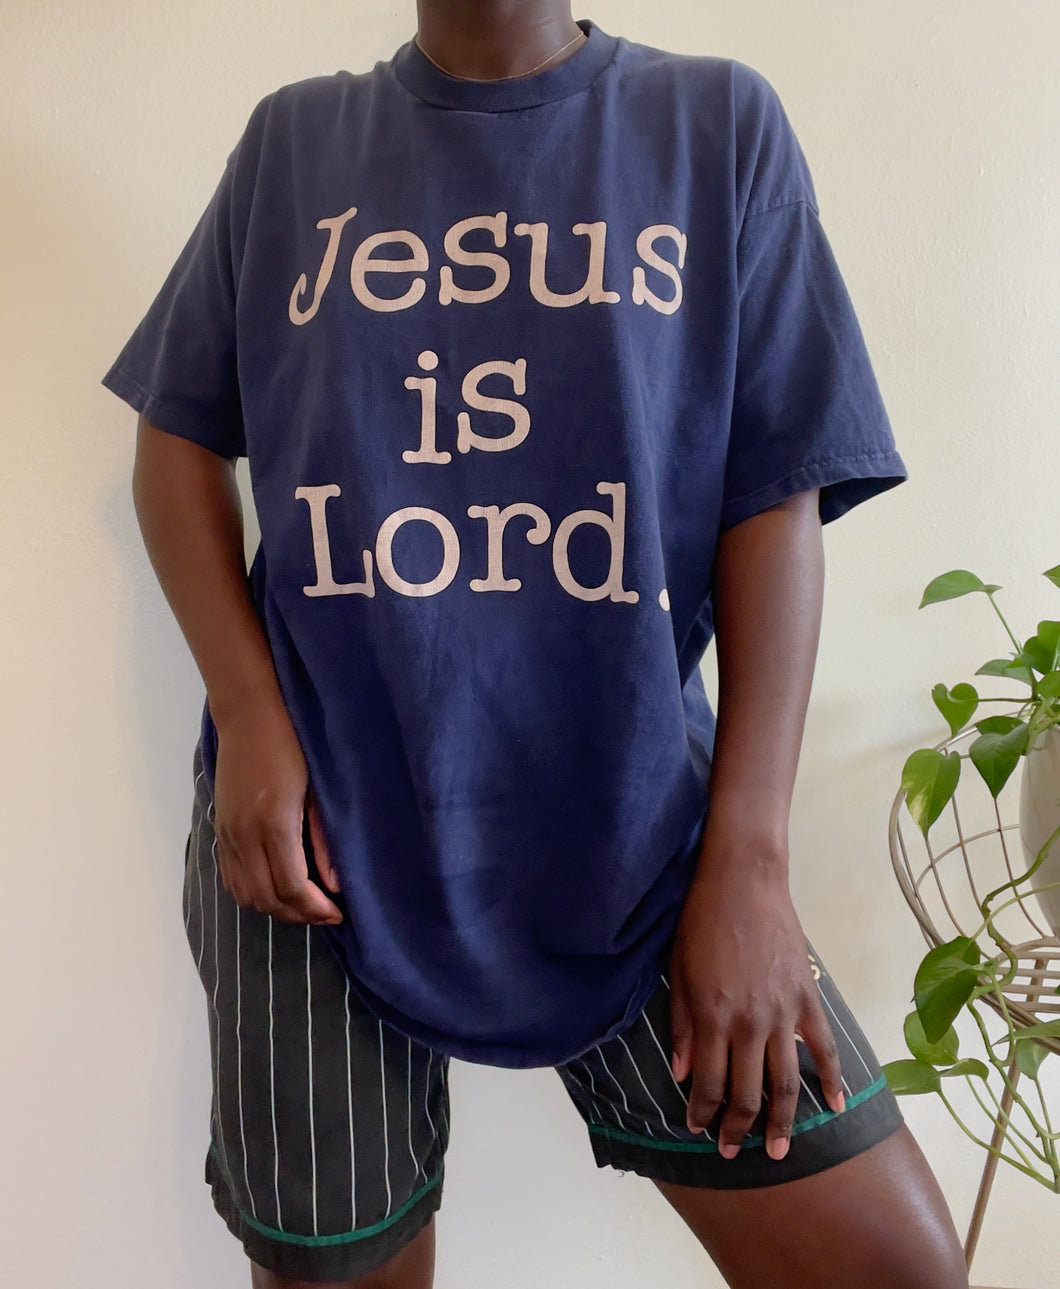 Jesus is Lord tee